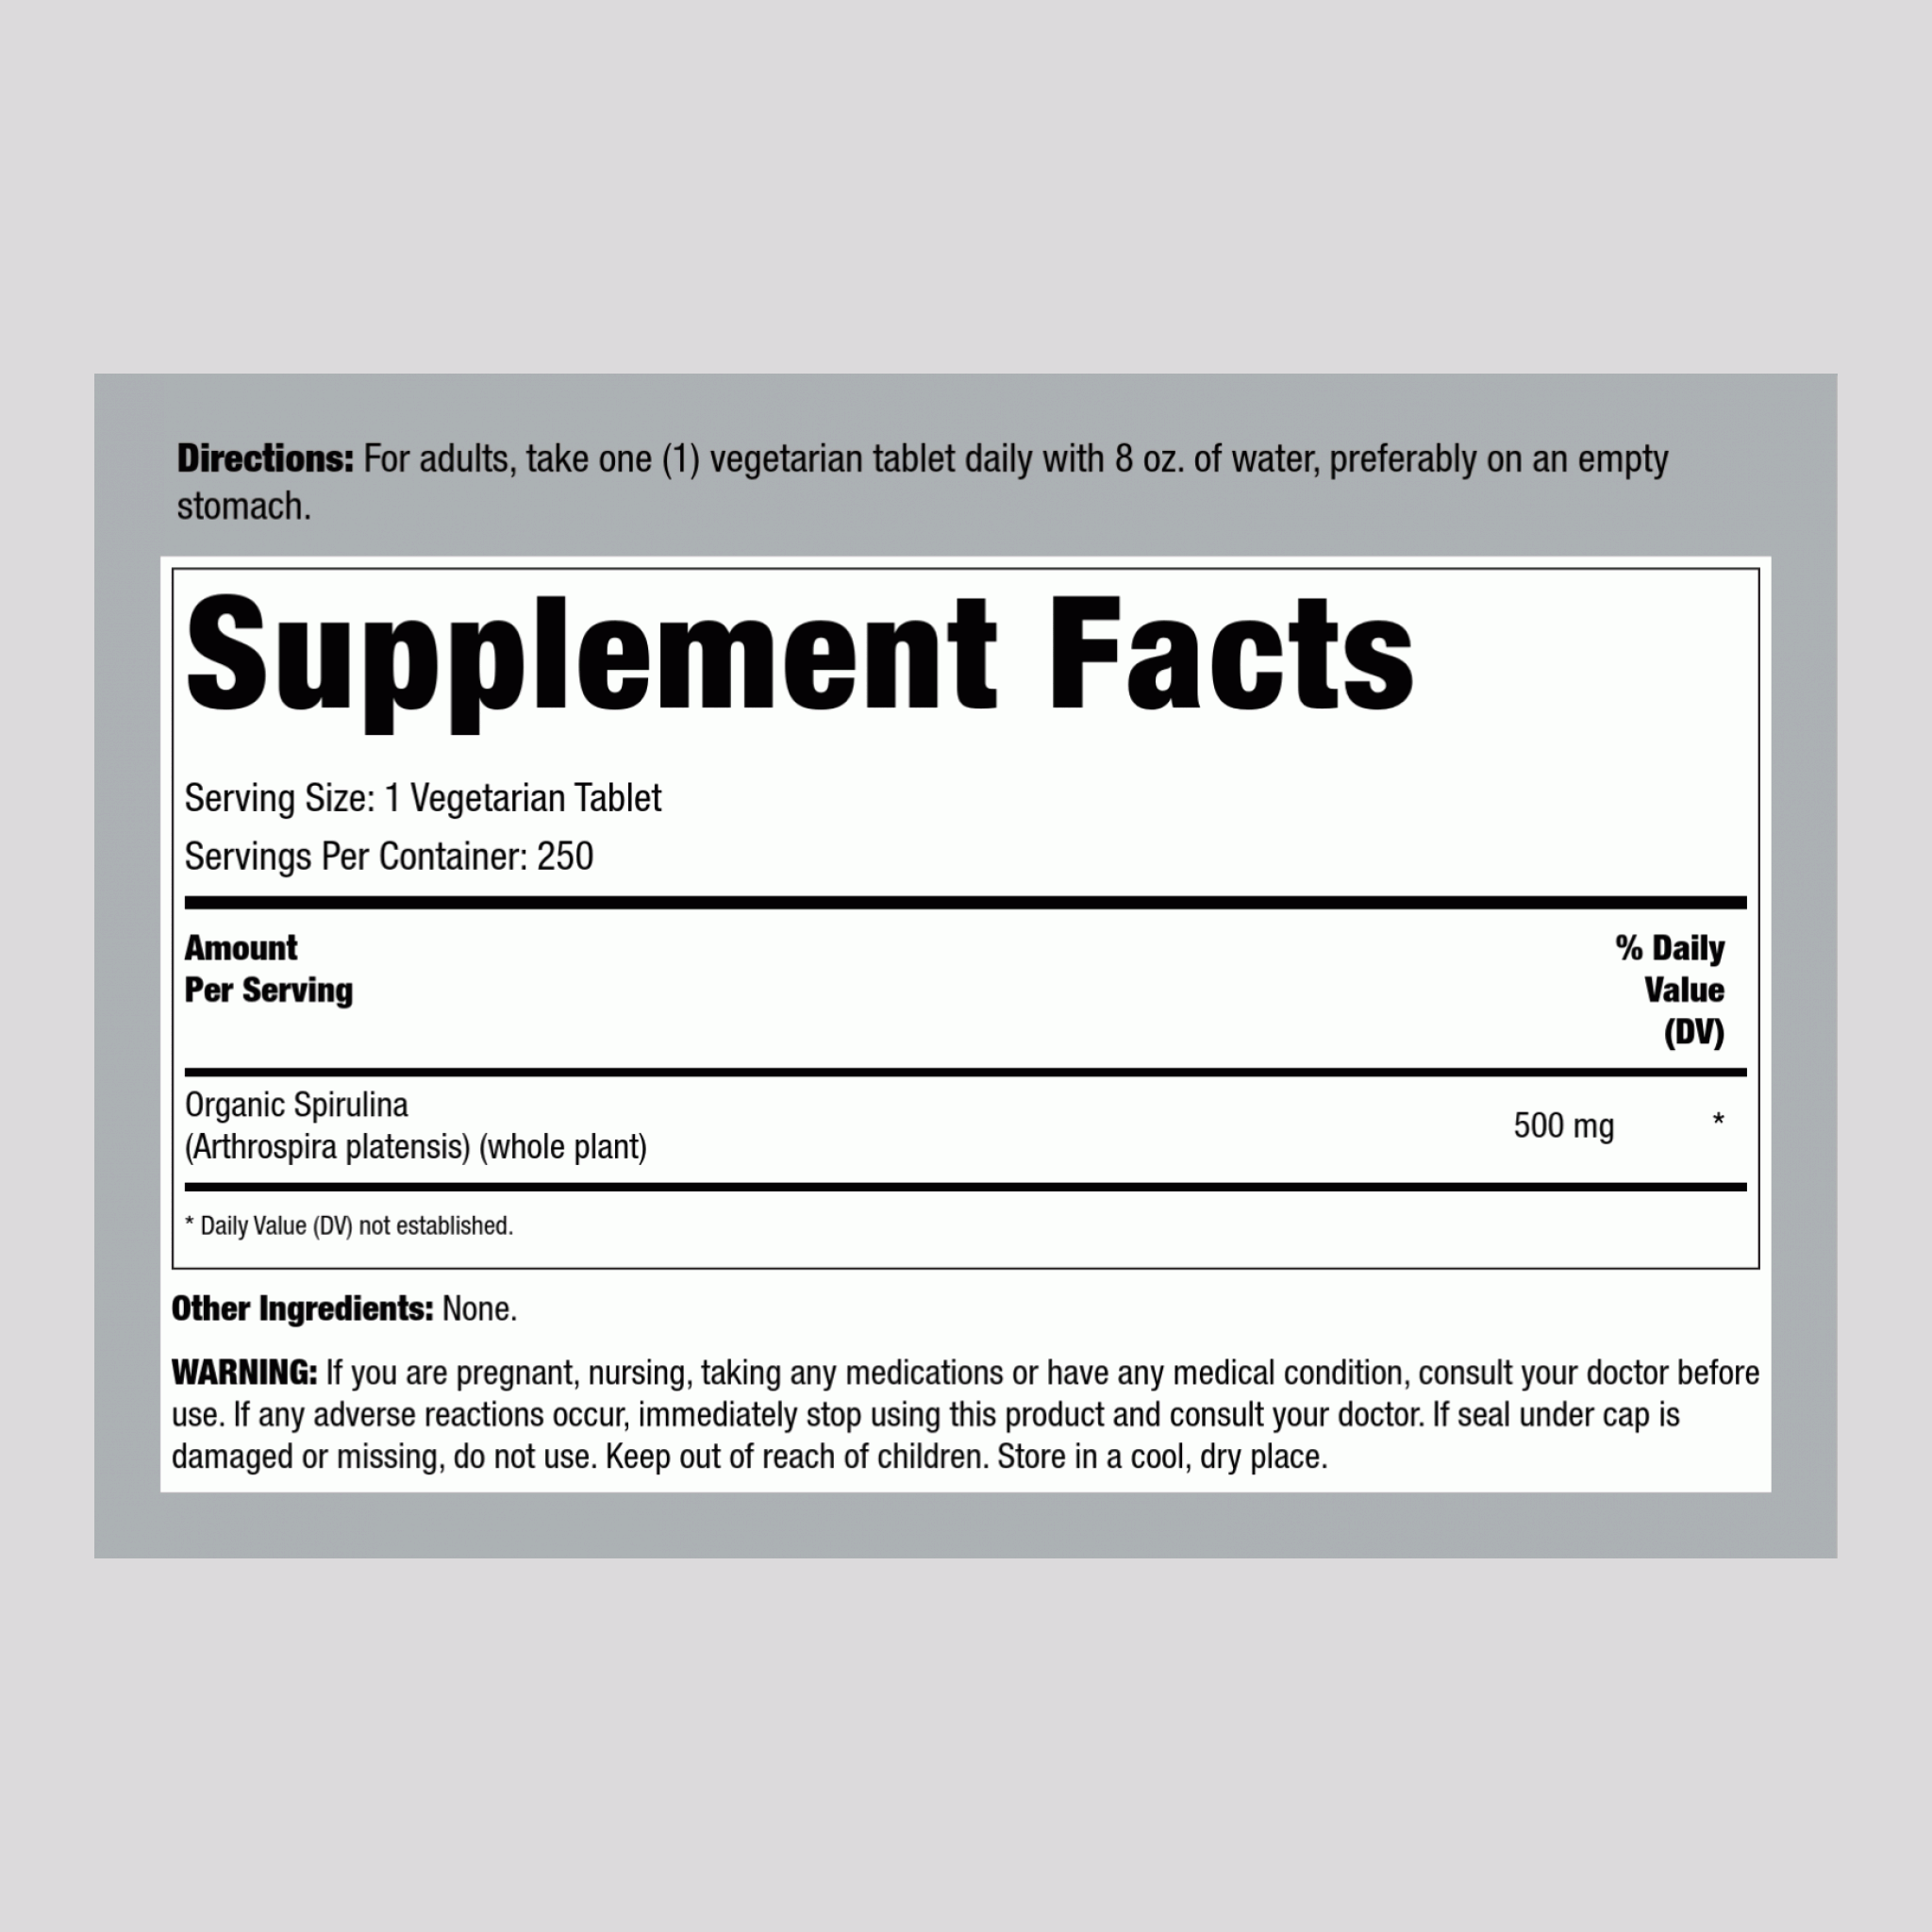 螺旋藻片 (有機) 500 mg 250 素食專用錠劑     